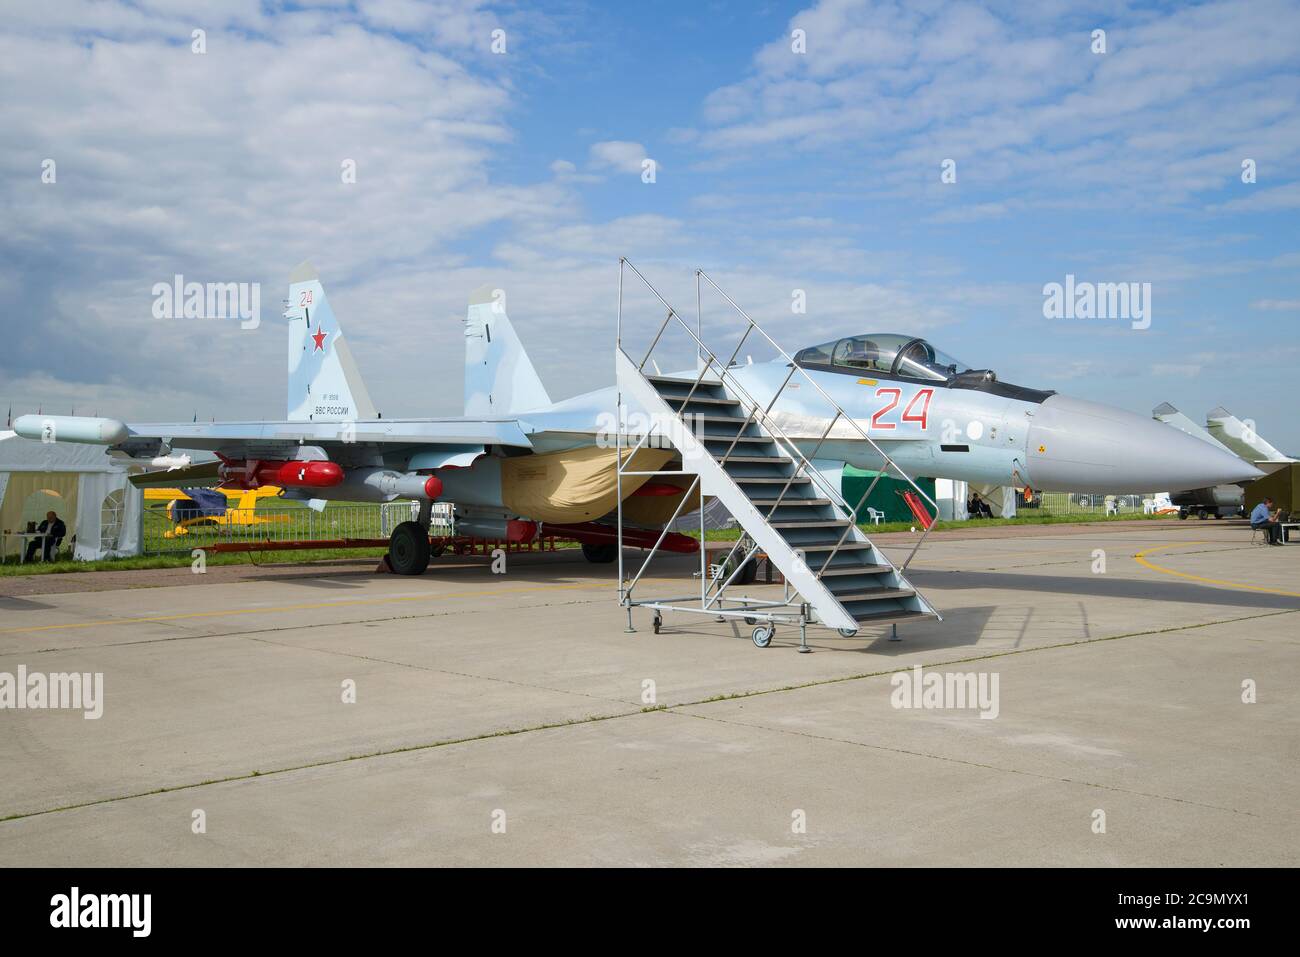 ZHUKOVSKY, RUSIA - 20 DE JULIO de 2017: Caza su-35 polivalente ruso super-maniobrable en el show aéreo MAKS-2017 Foto de stock